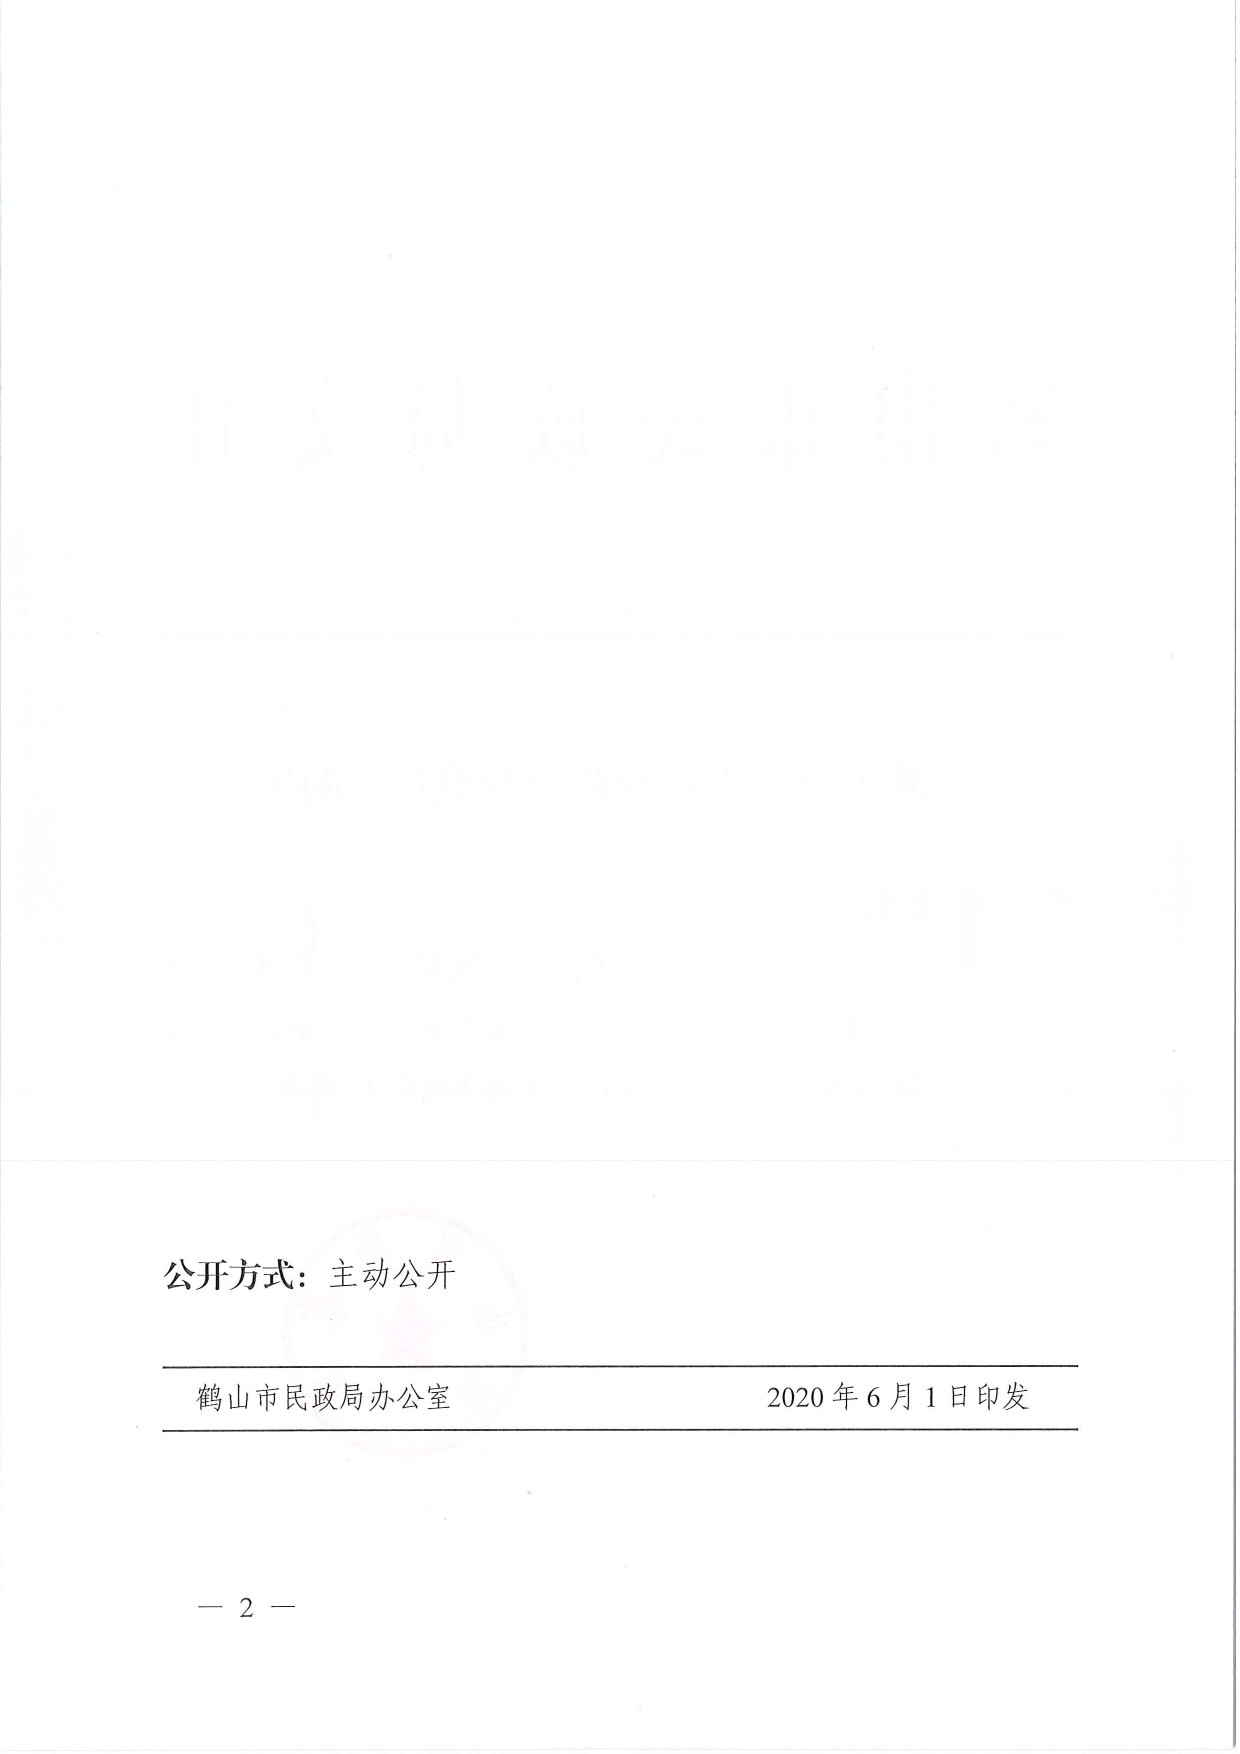 鹤民社〔2020〕22号关于准予鹤山市鞋业商会变更登记的批复-2.jpg